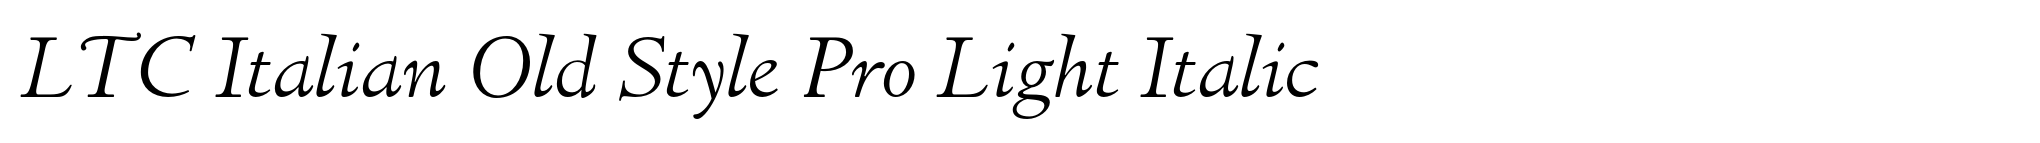 LTC Italian Old Style Pro Light Italic image